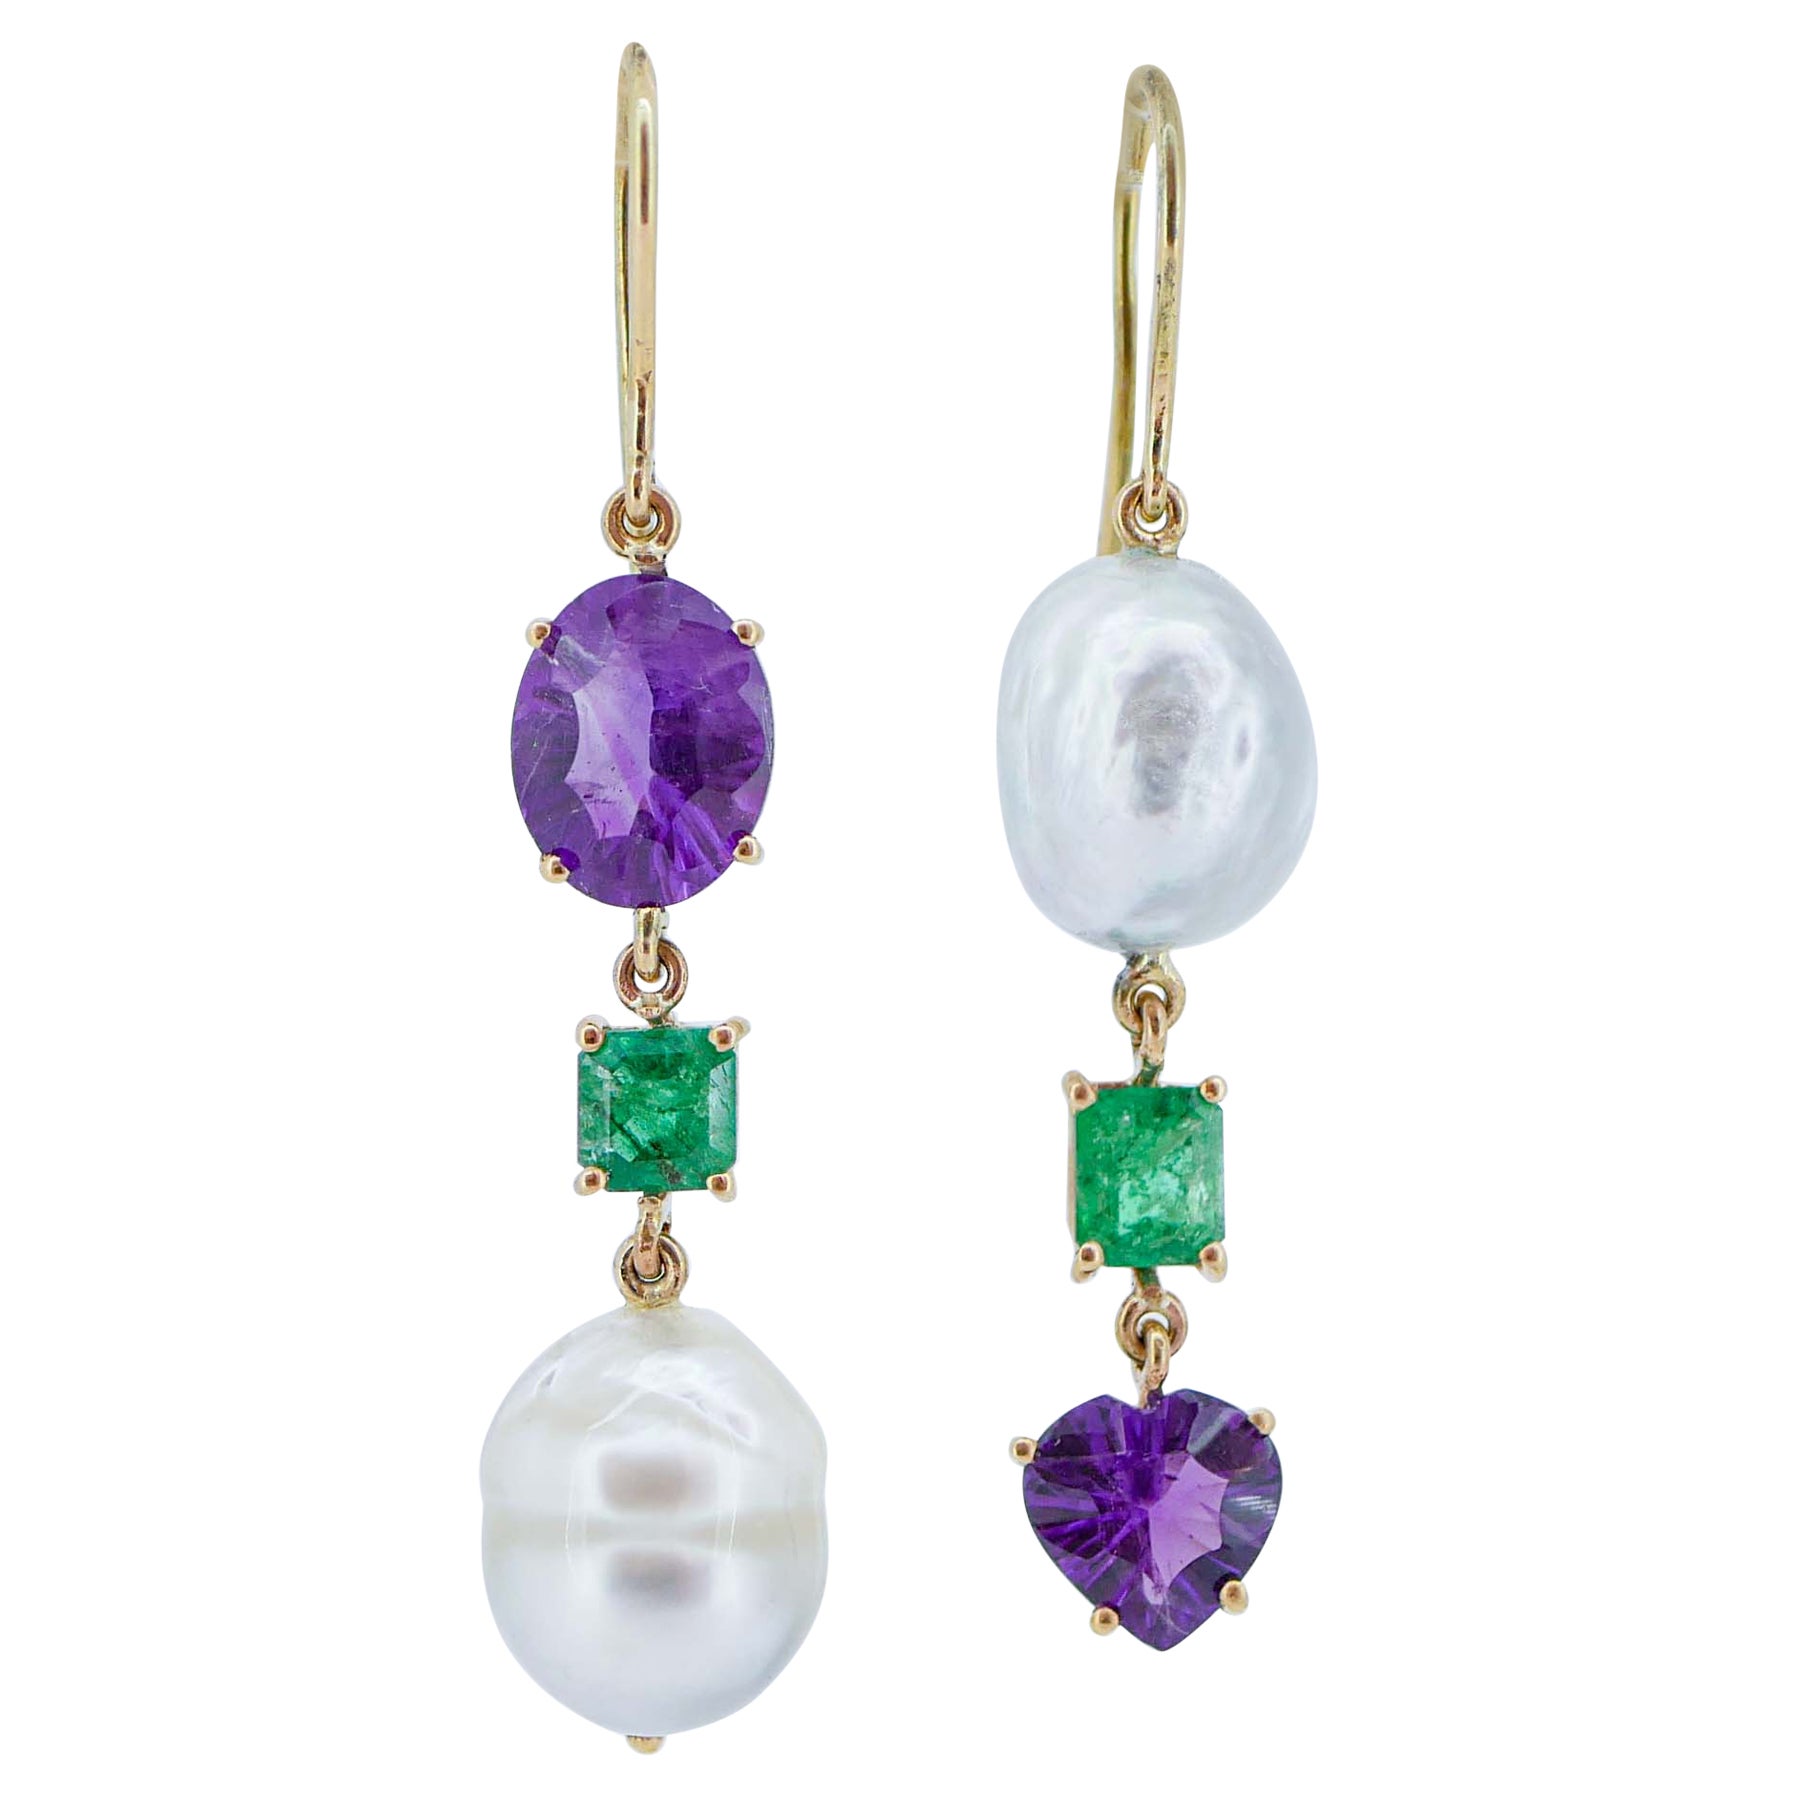 Boucles d'oreilles pendantes en or rose 14 carats, perles, améthystes et émeraudes.